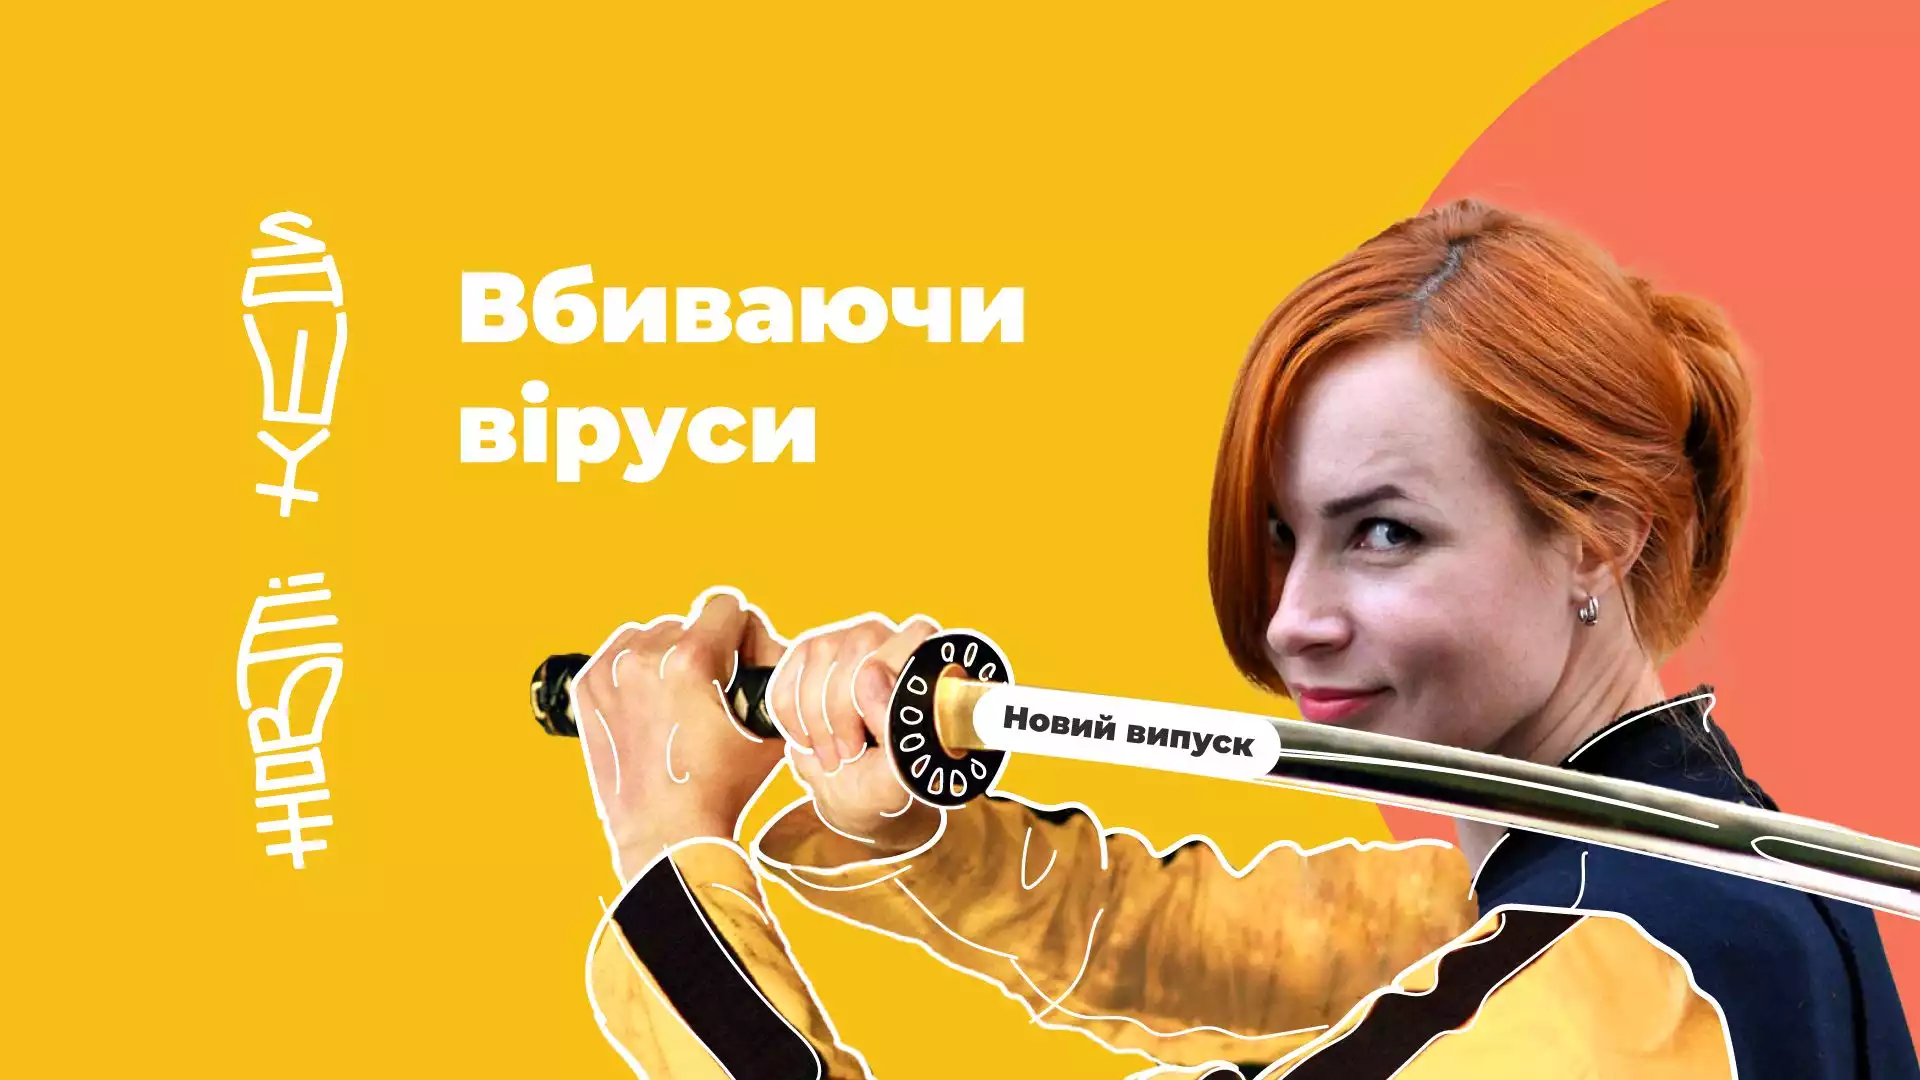 Ютуб-проєкт позитивних історій Юлії Бориско «Жовті кеди» тепер виходить за підтримки USAID